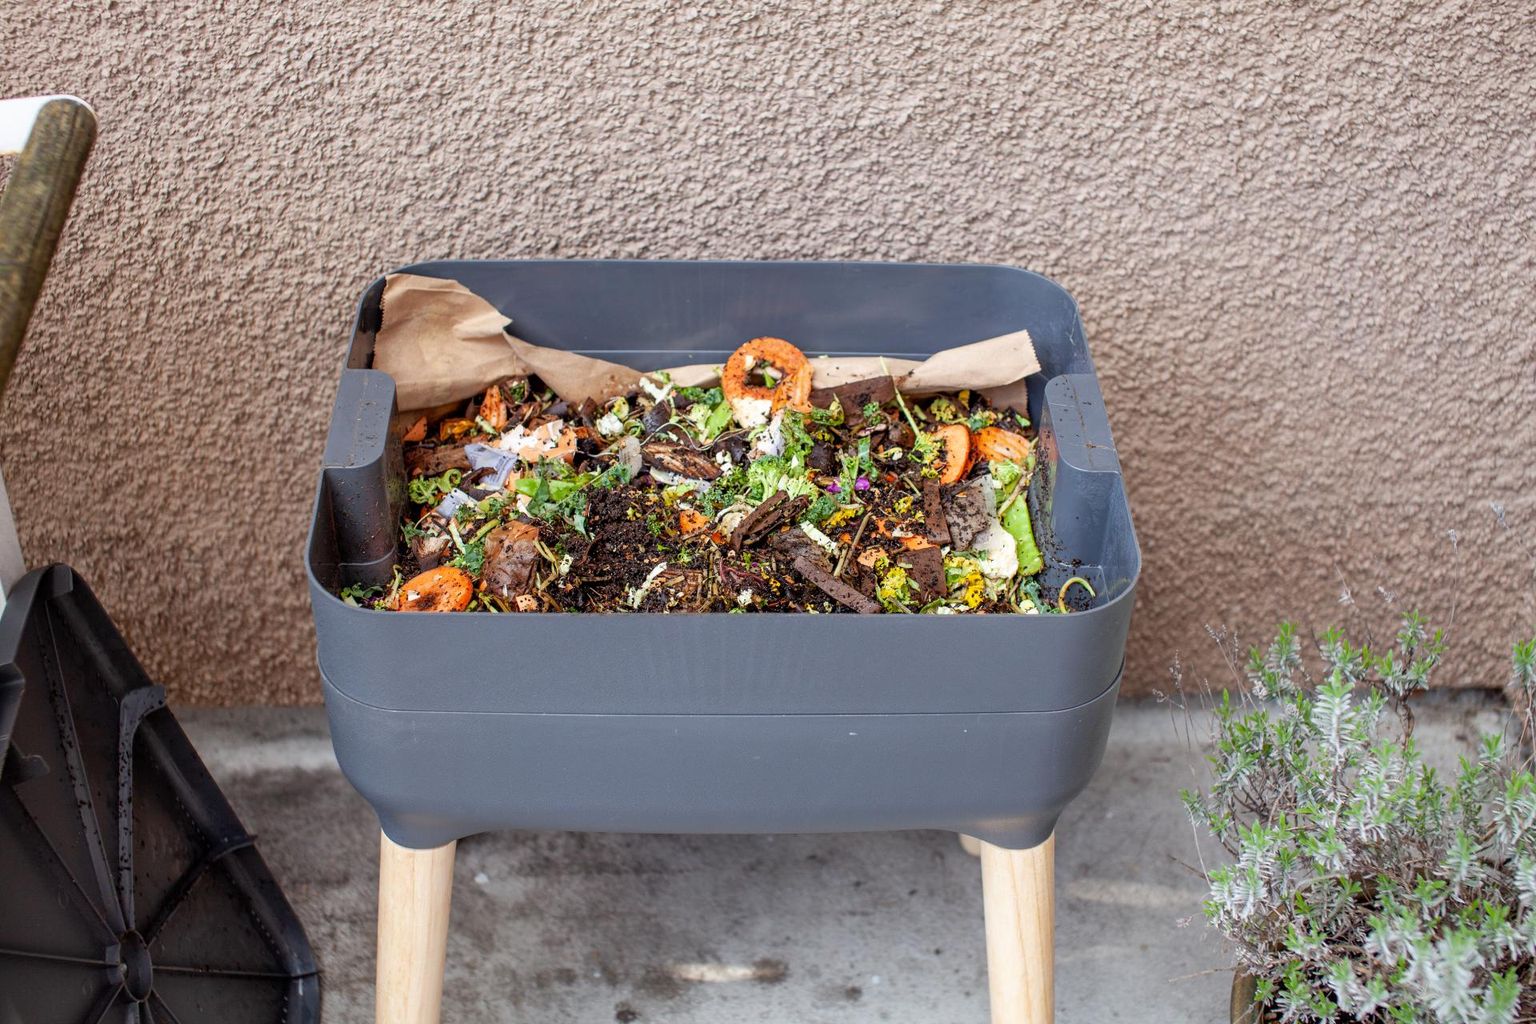 Rõdule saab kompostri osta või ise ehitada, tiheasustuses peaks see olema kinnine, et vältida närilisi ja linde.